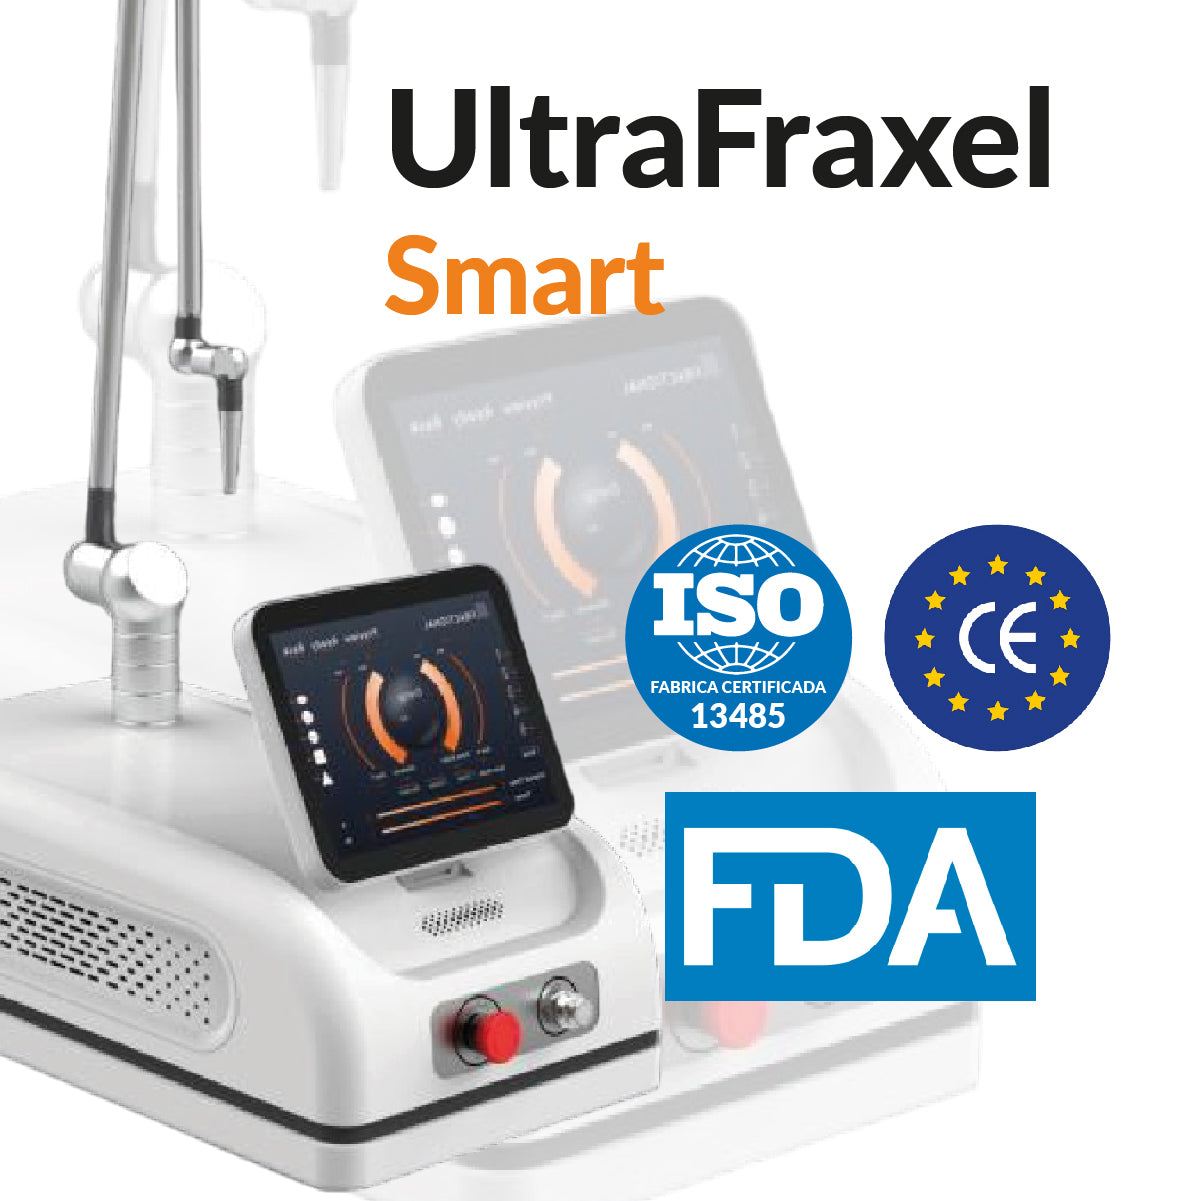 UltraFraxel Smart